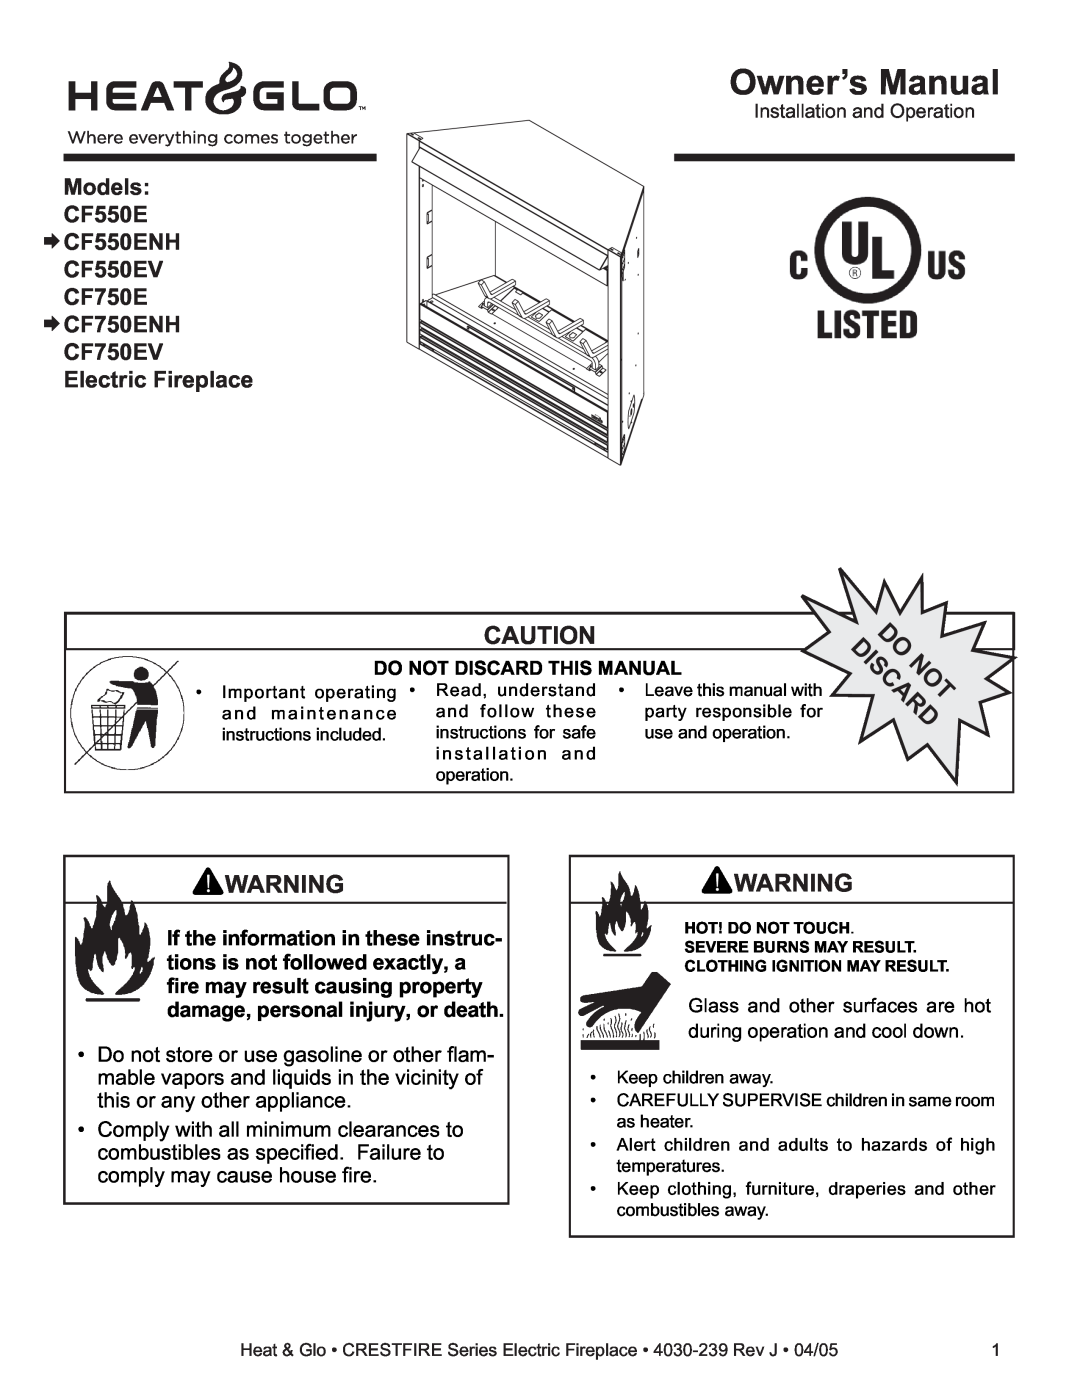 Heat & Glo LifeStyle owner manual Models CF550E CF550ENH CF550EV CF750E CF750ENH, CF750EV Electric Fireplace 